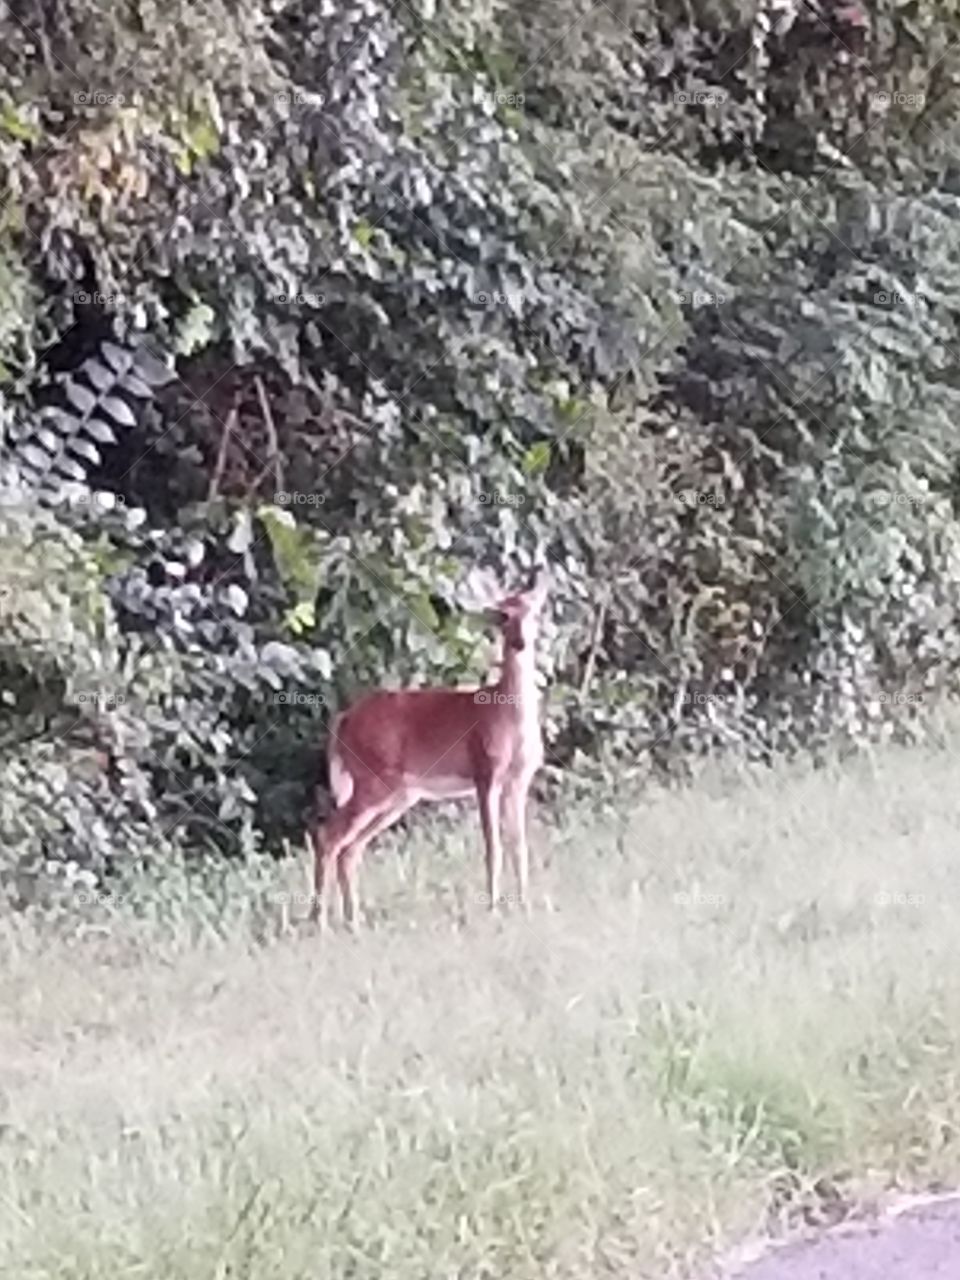 Doe A Deer